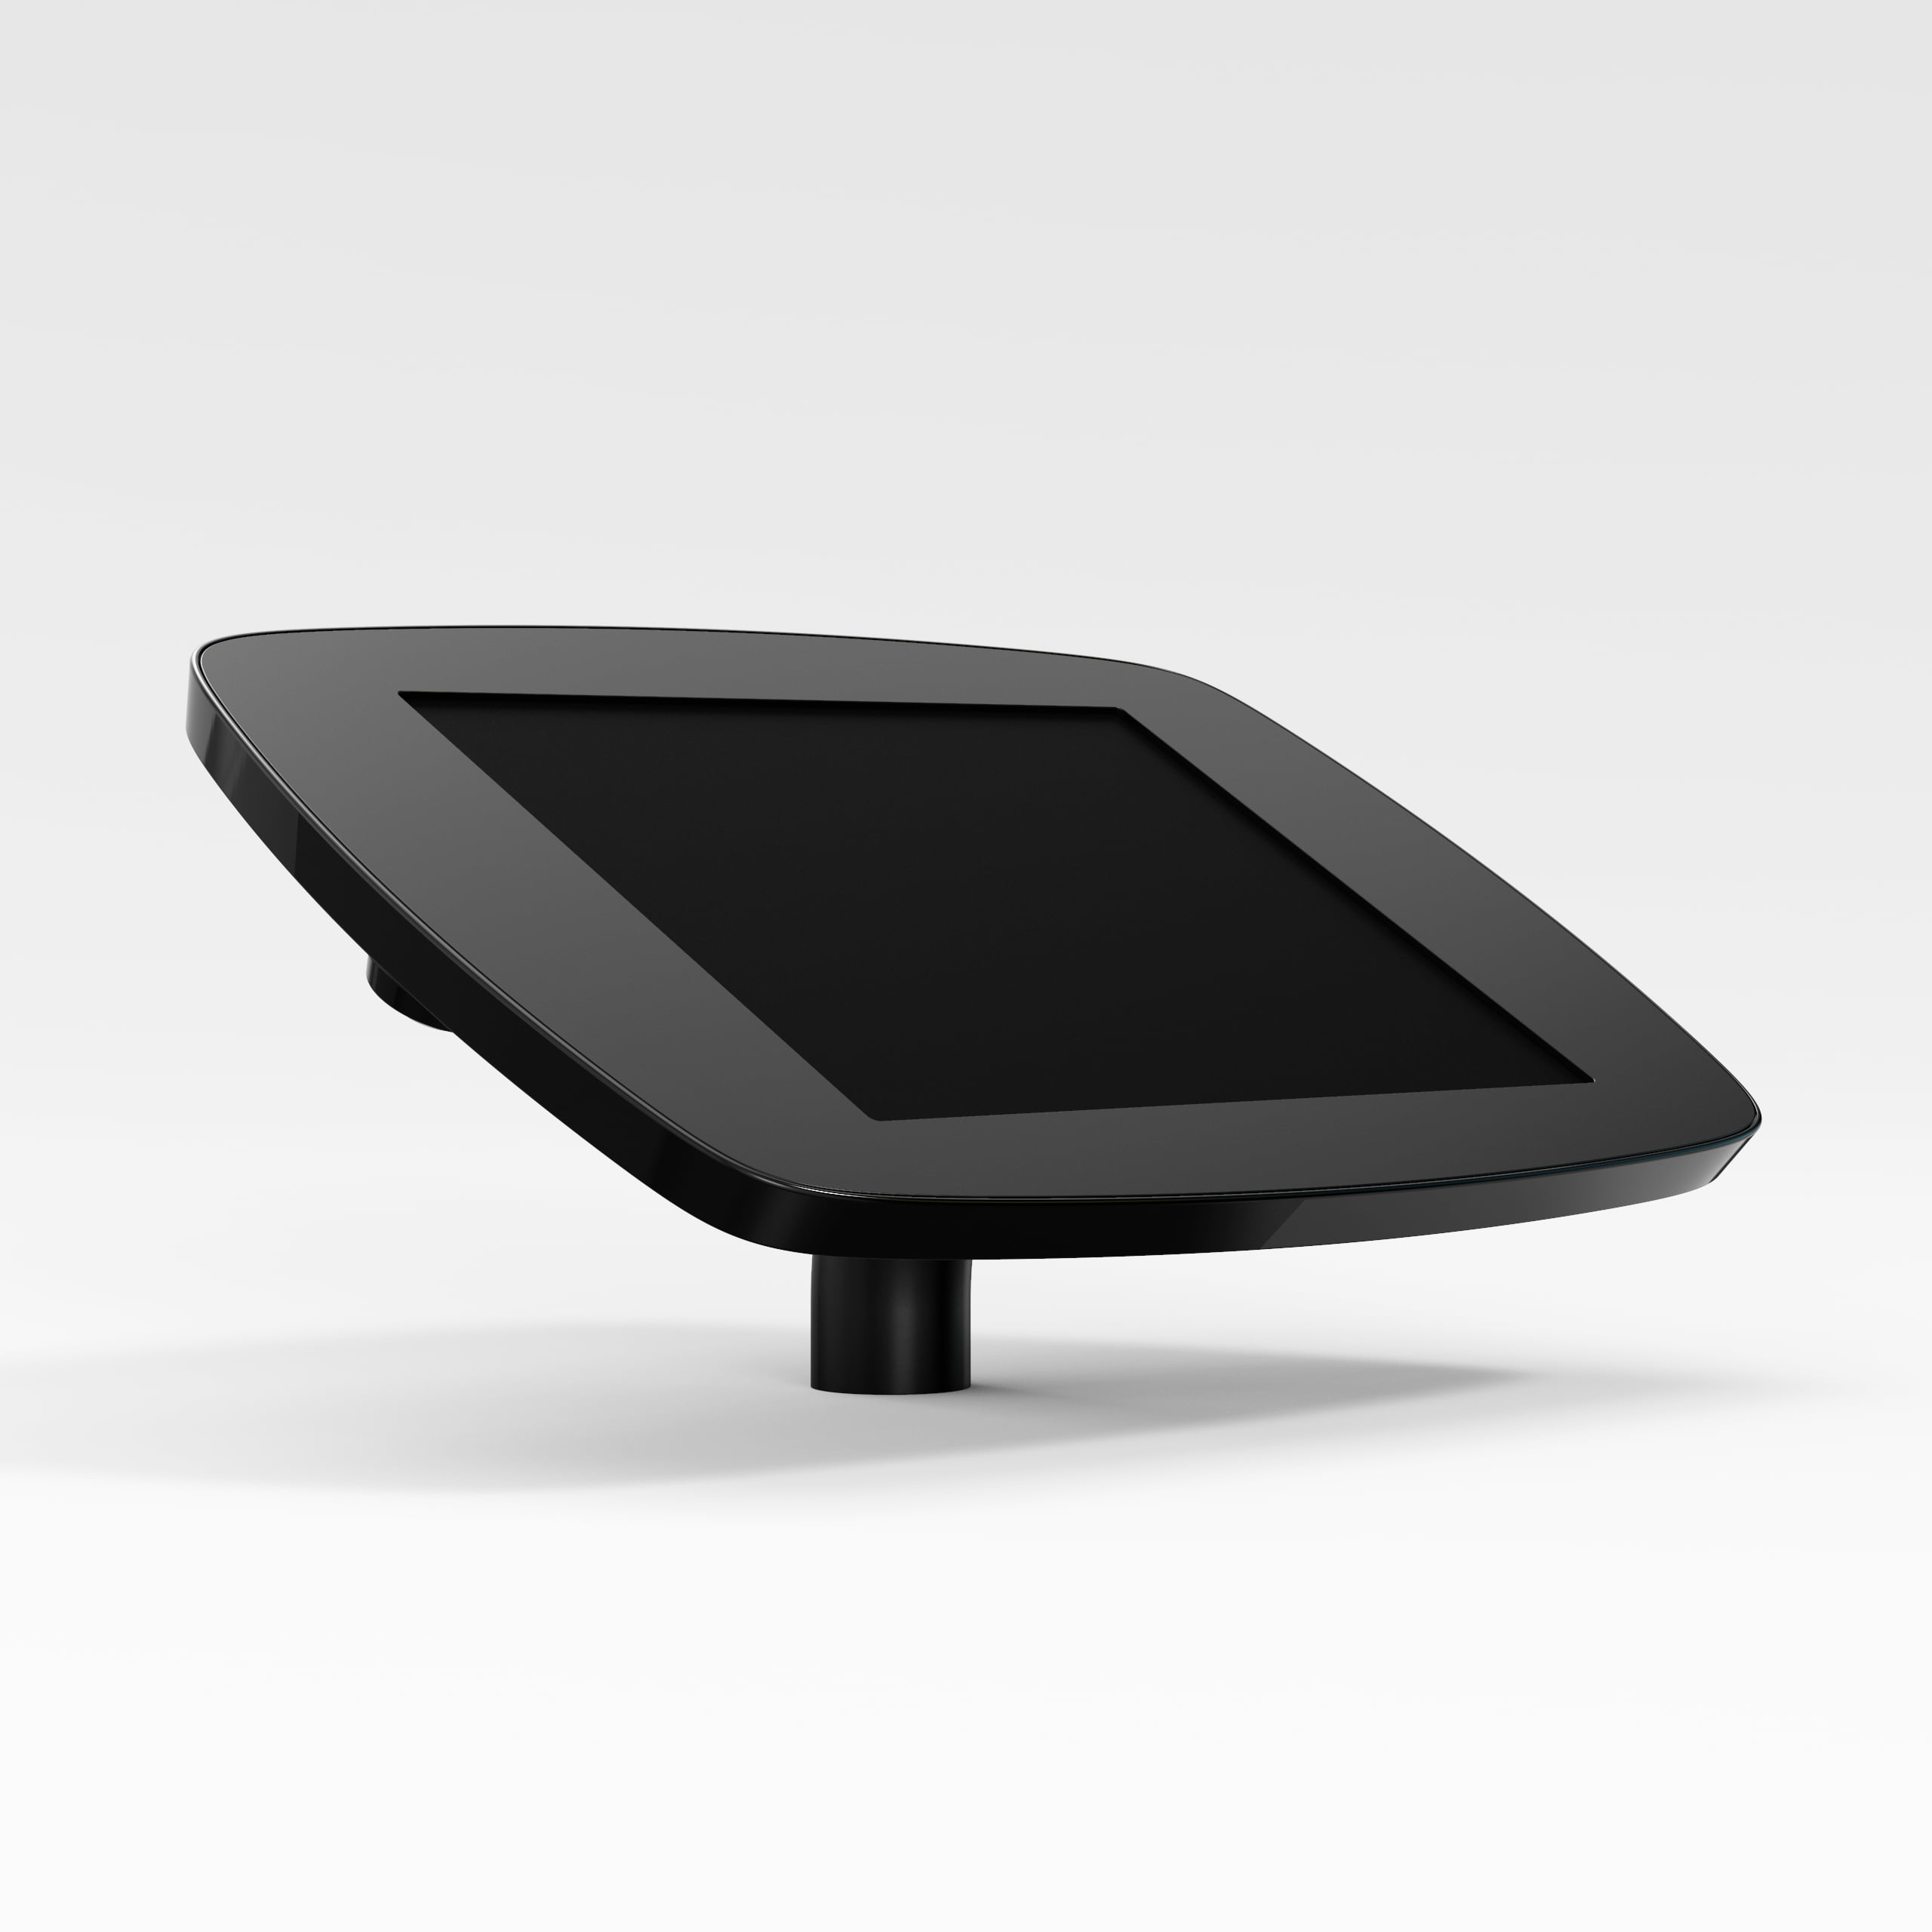 Bouncepad Desk supporto antifurto per tablet 25,6 cm [10.1] Nero (DESKBLKCLOSEDCAM/CLOSEDHOME GT4)